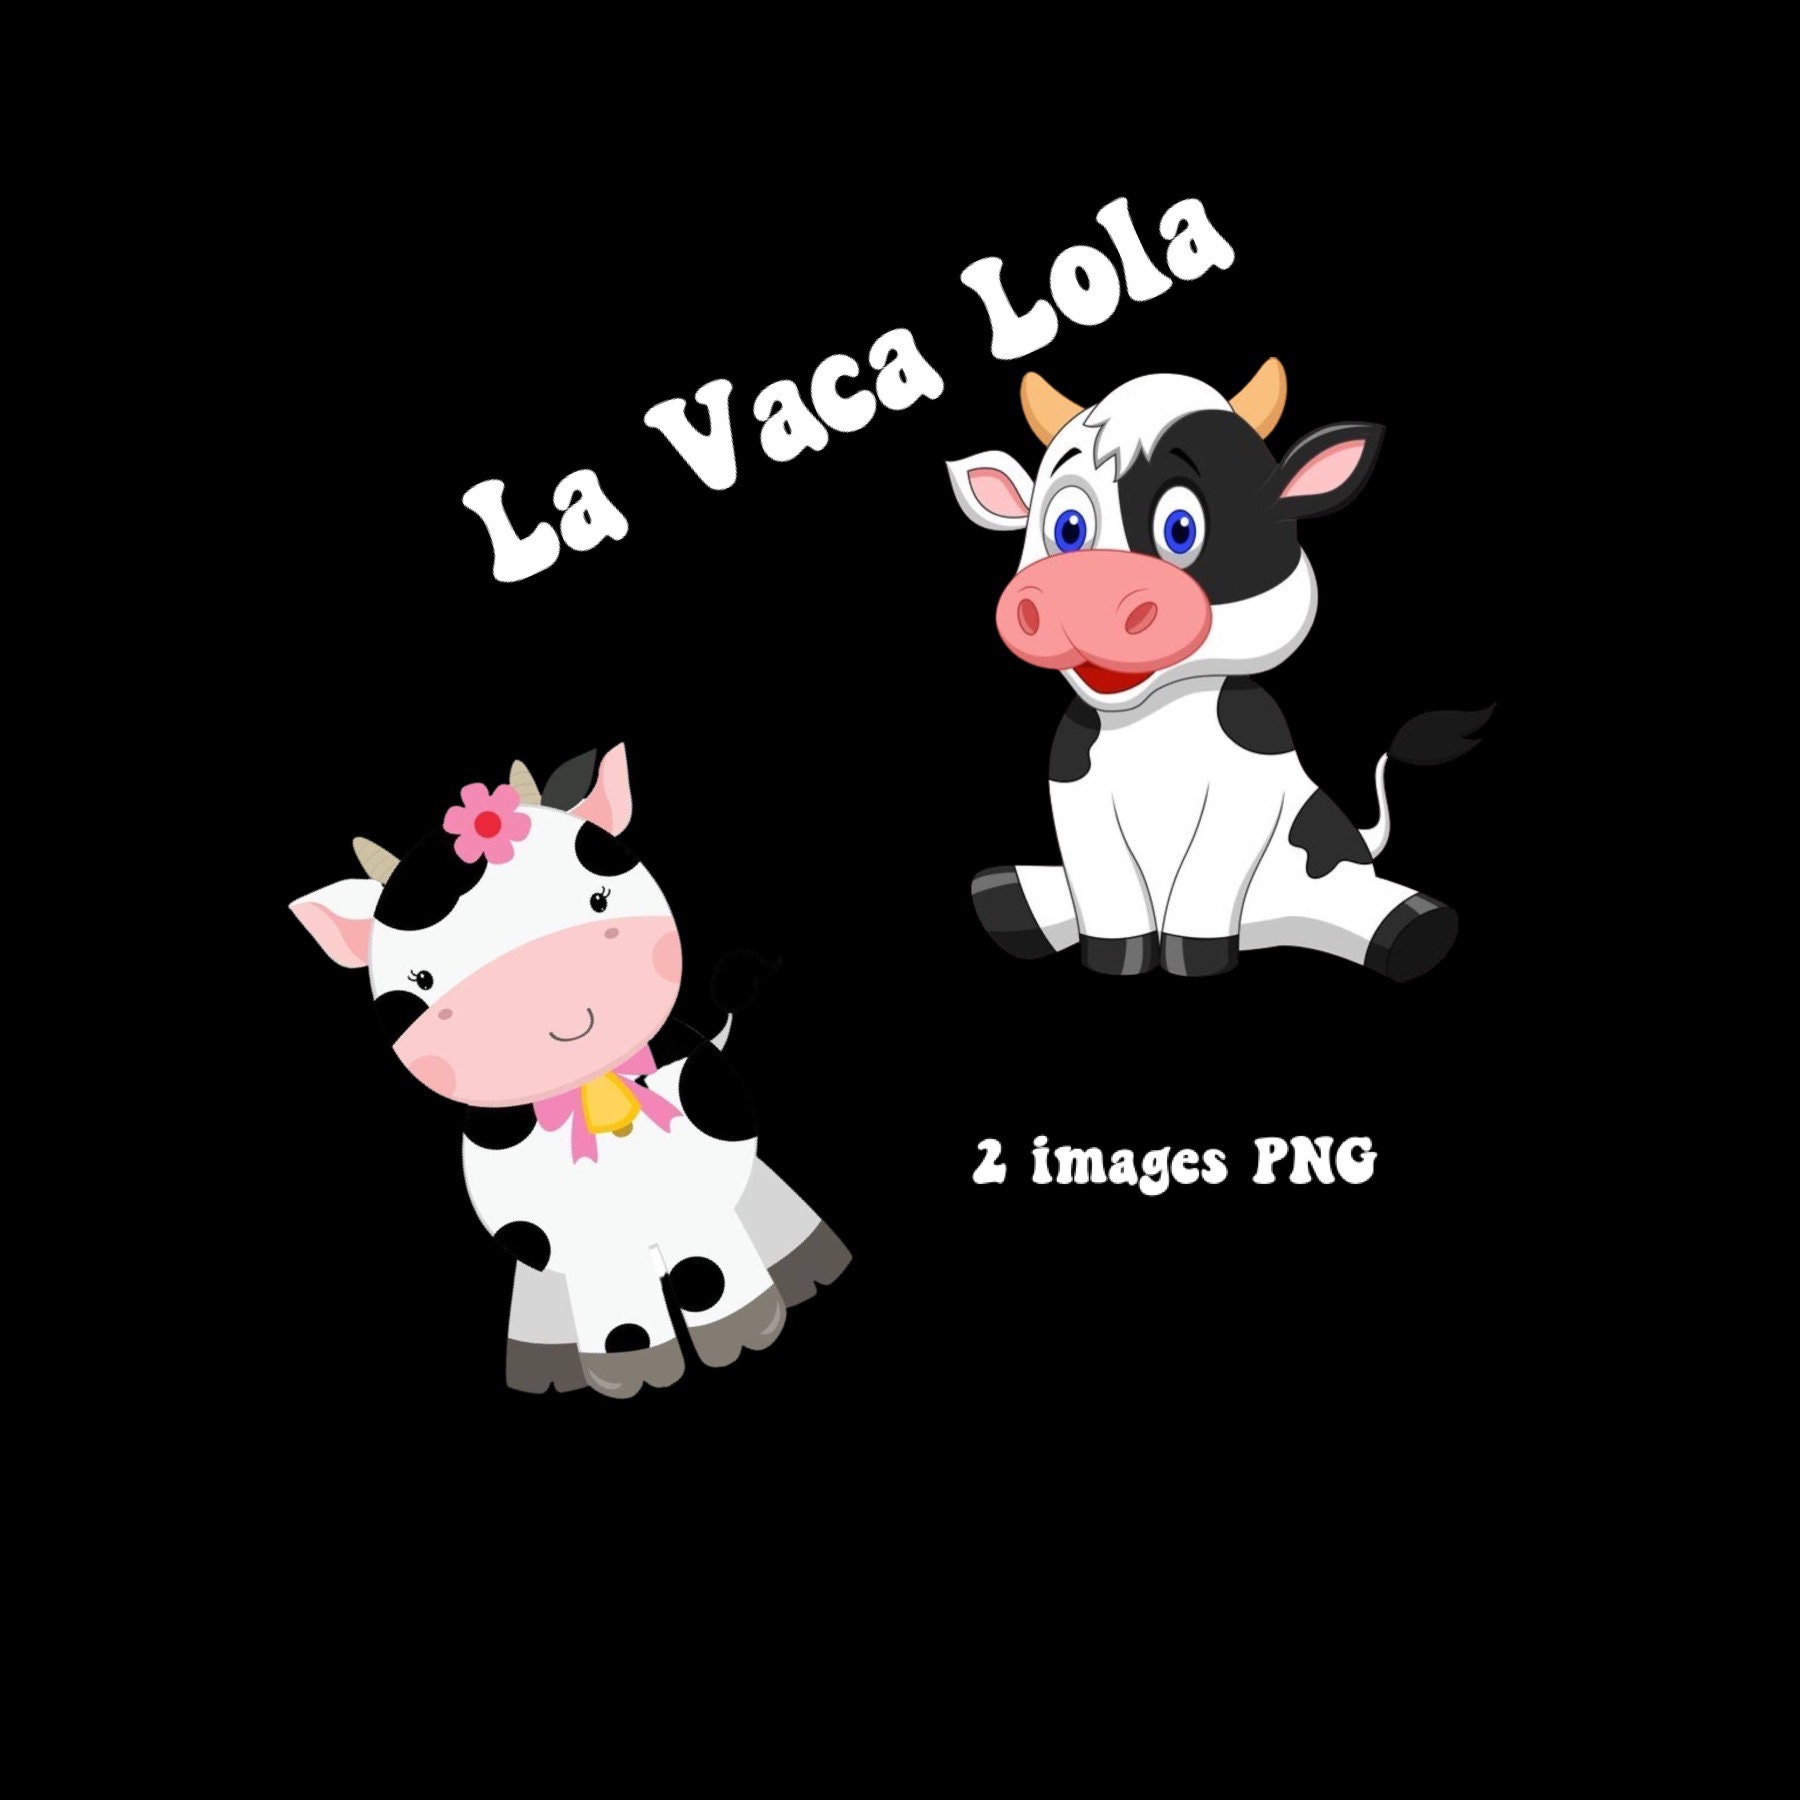 La Vaca Lola PNG Image -  Israel